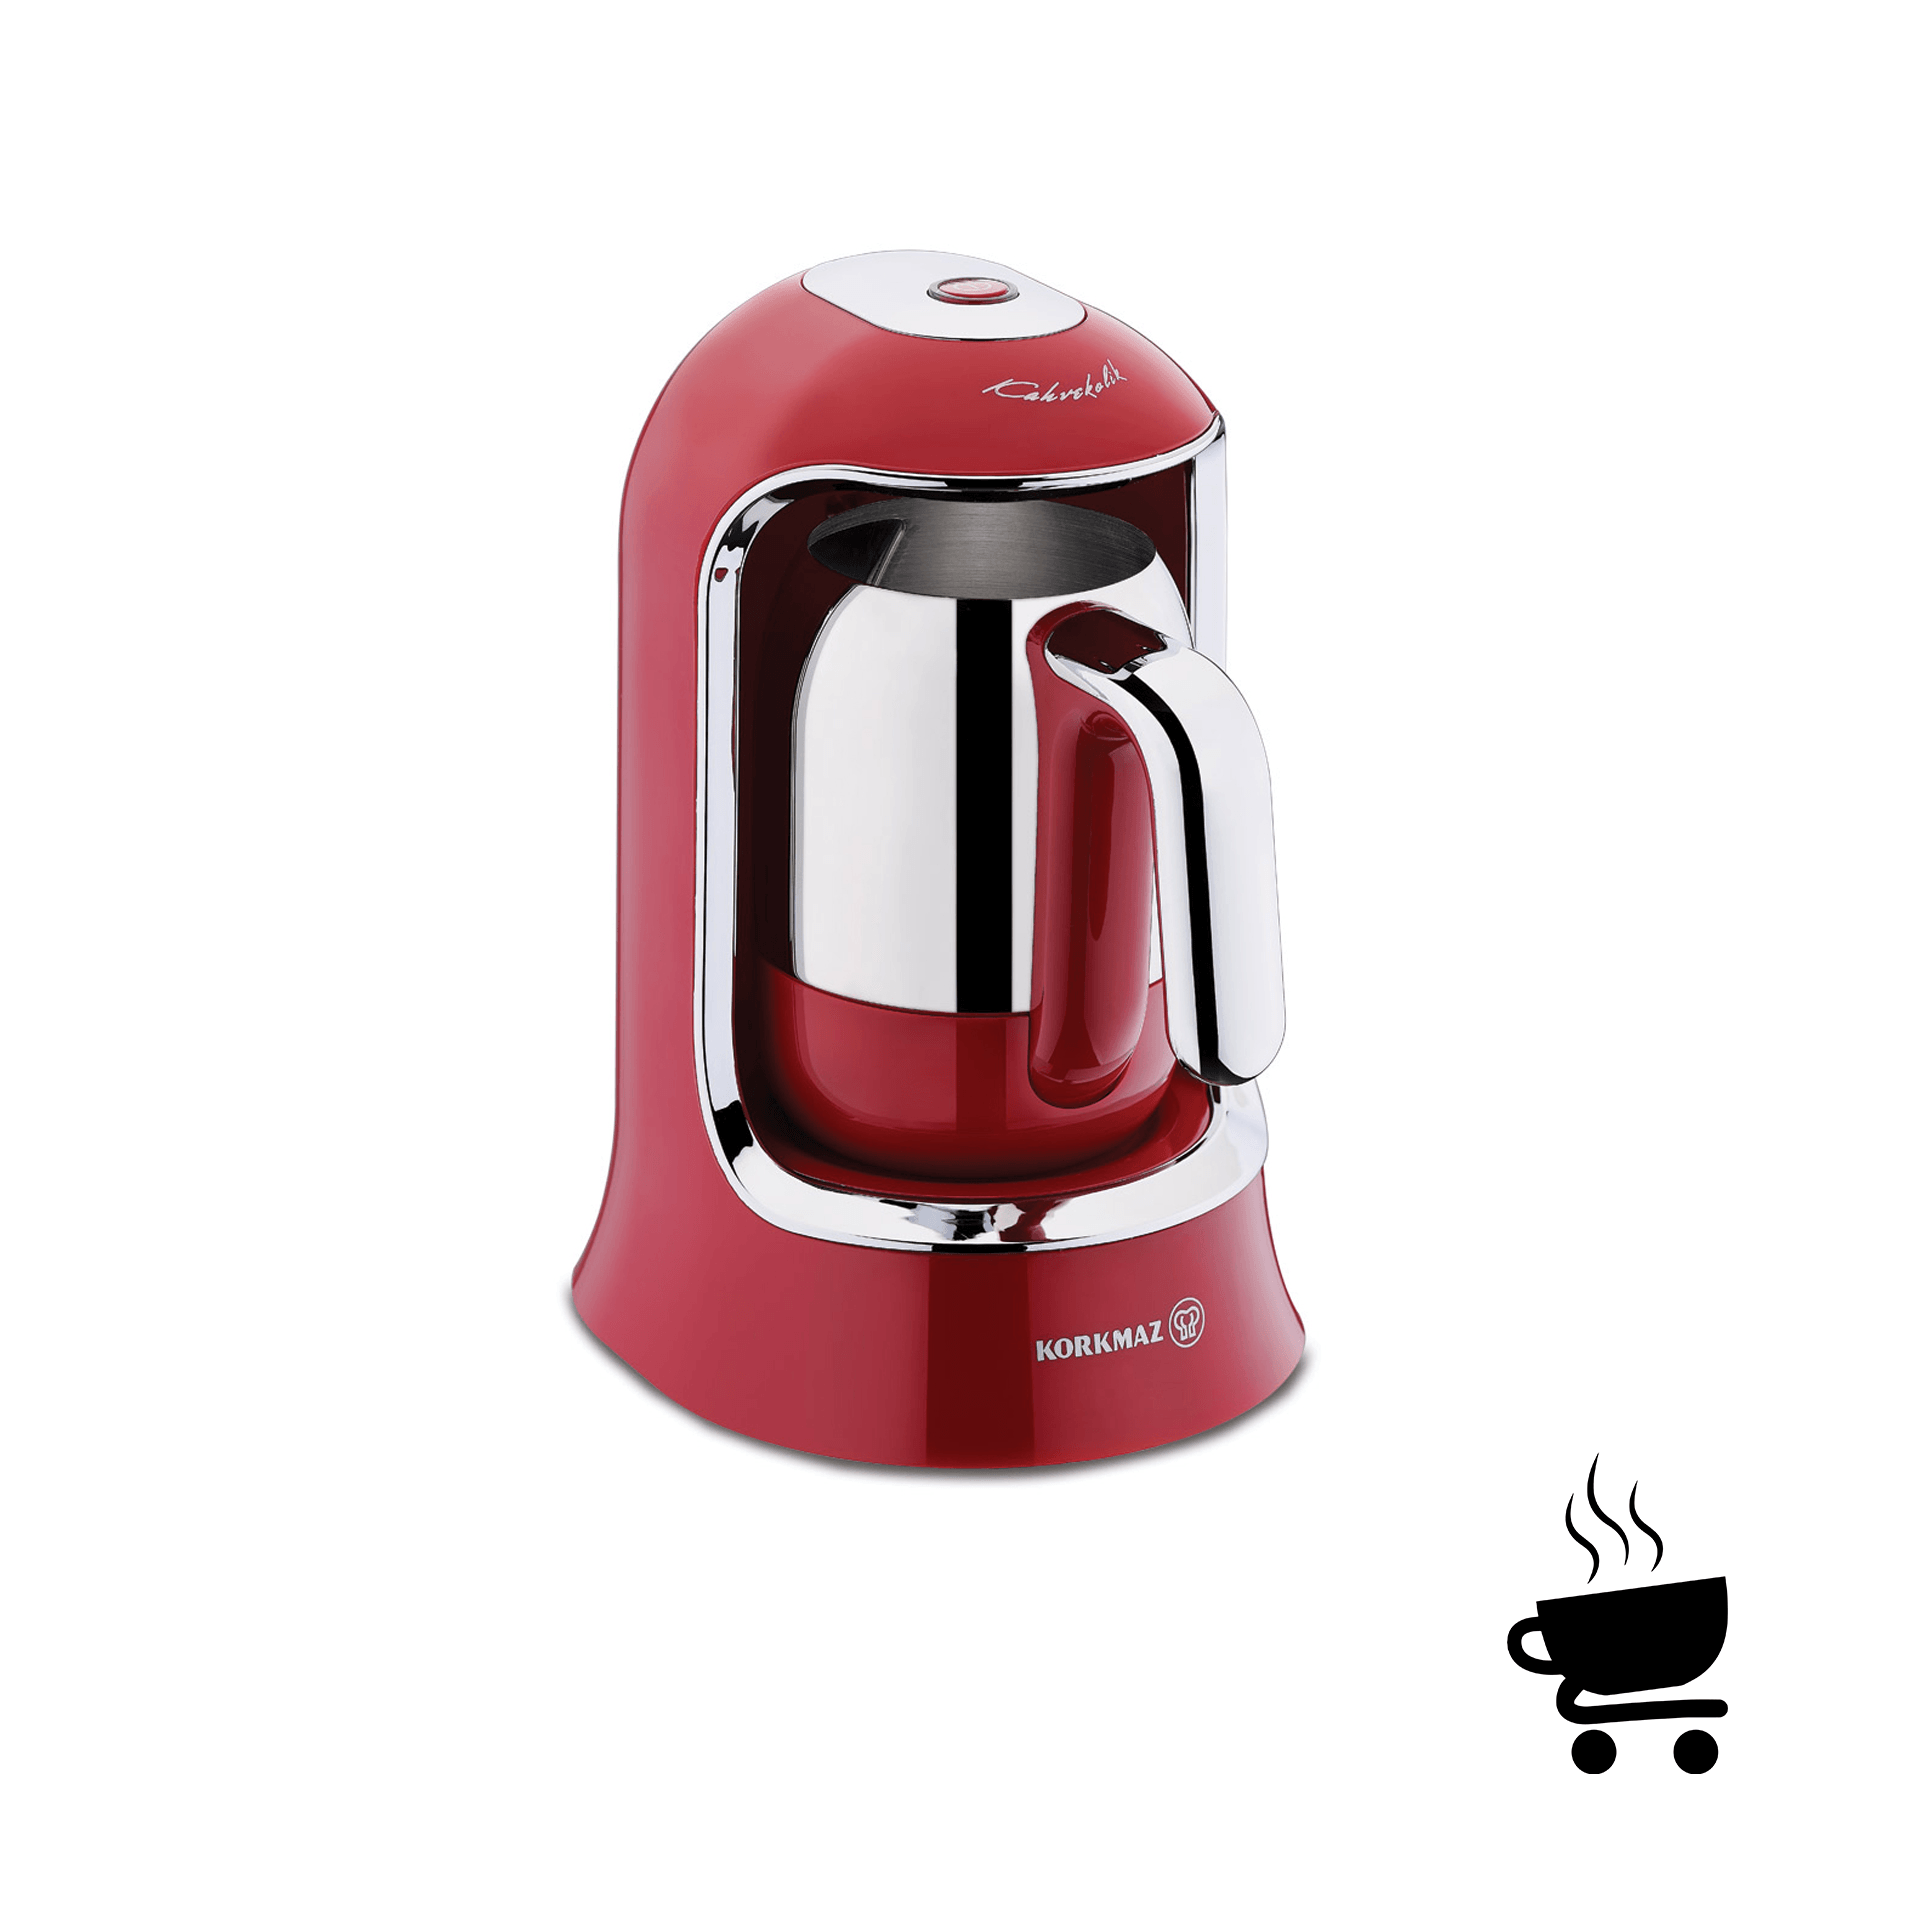 Korkmaz Kahvekolik  Otomatik Kahve Makinesi - Kırmızı